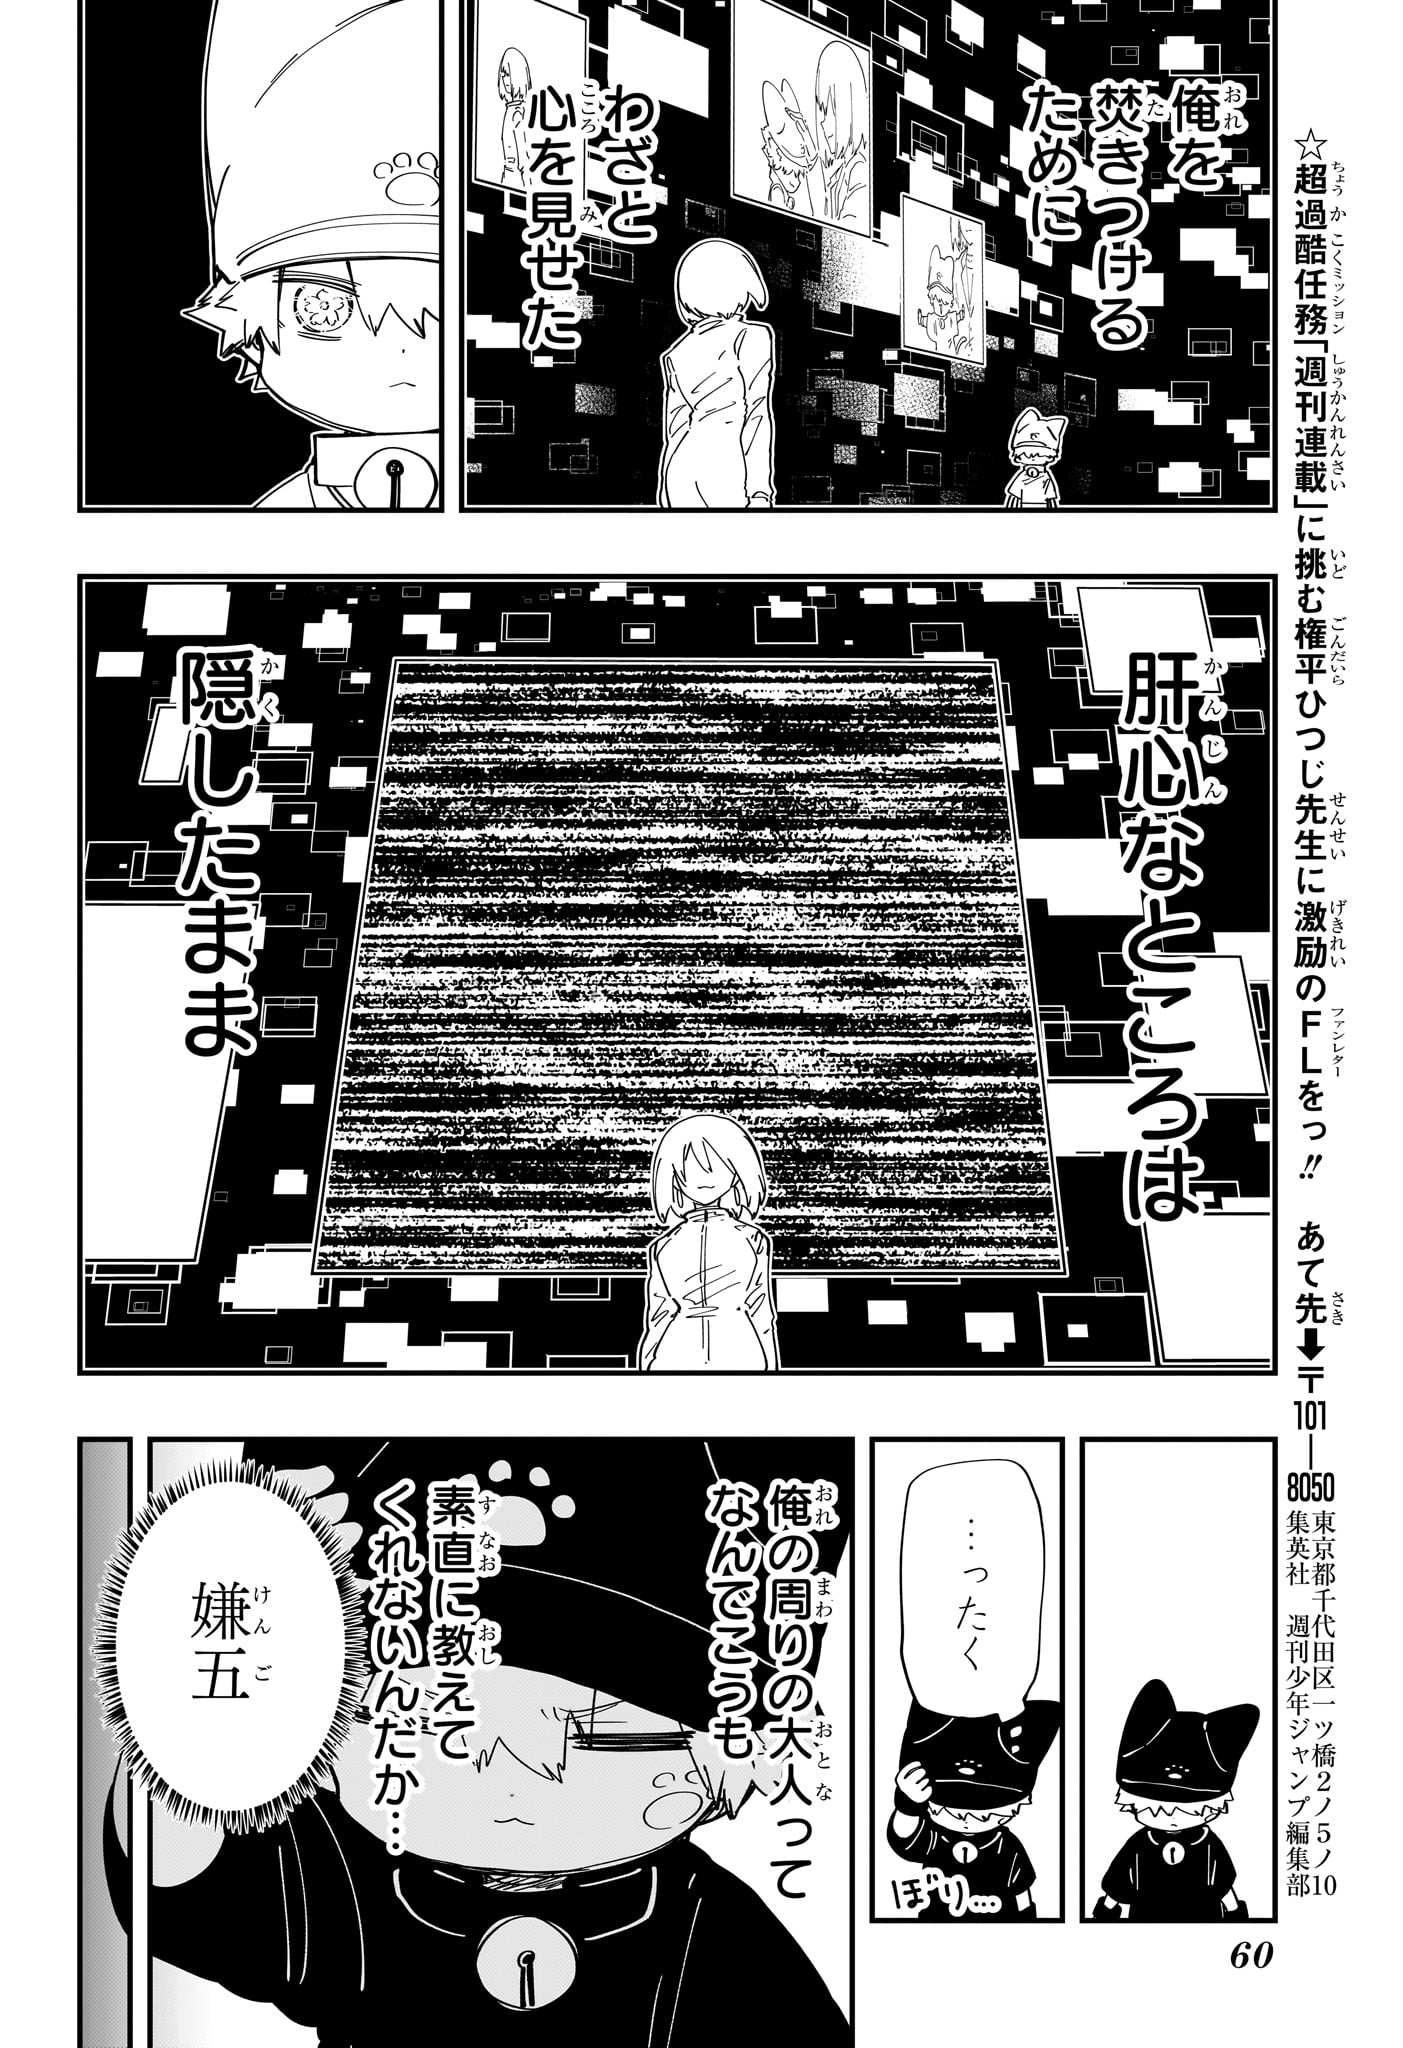 Yozakura-san Chi no Daisakusen - Chapter 232 - Page 14